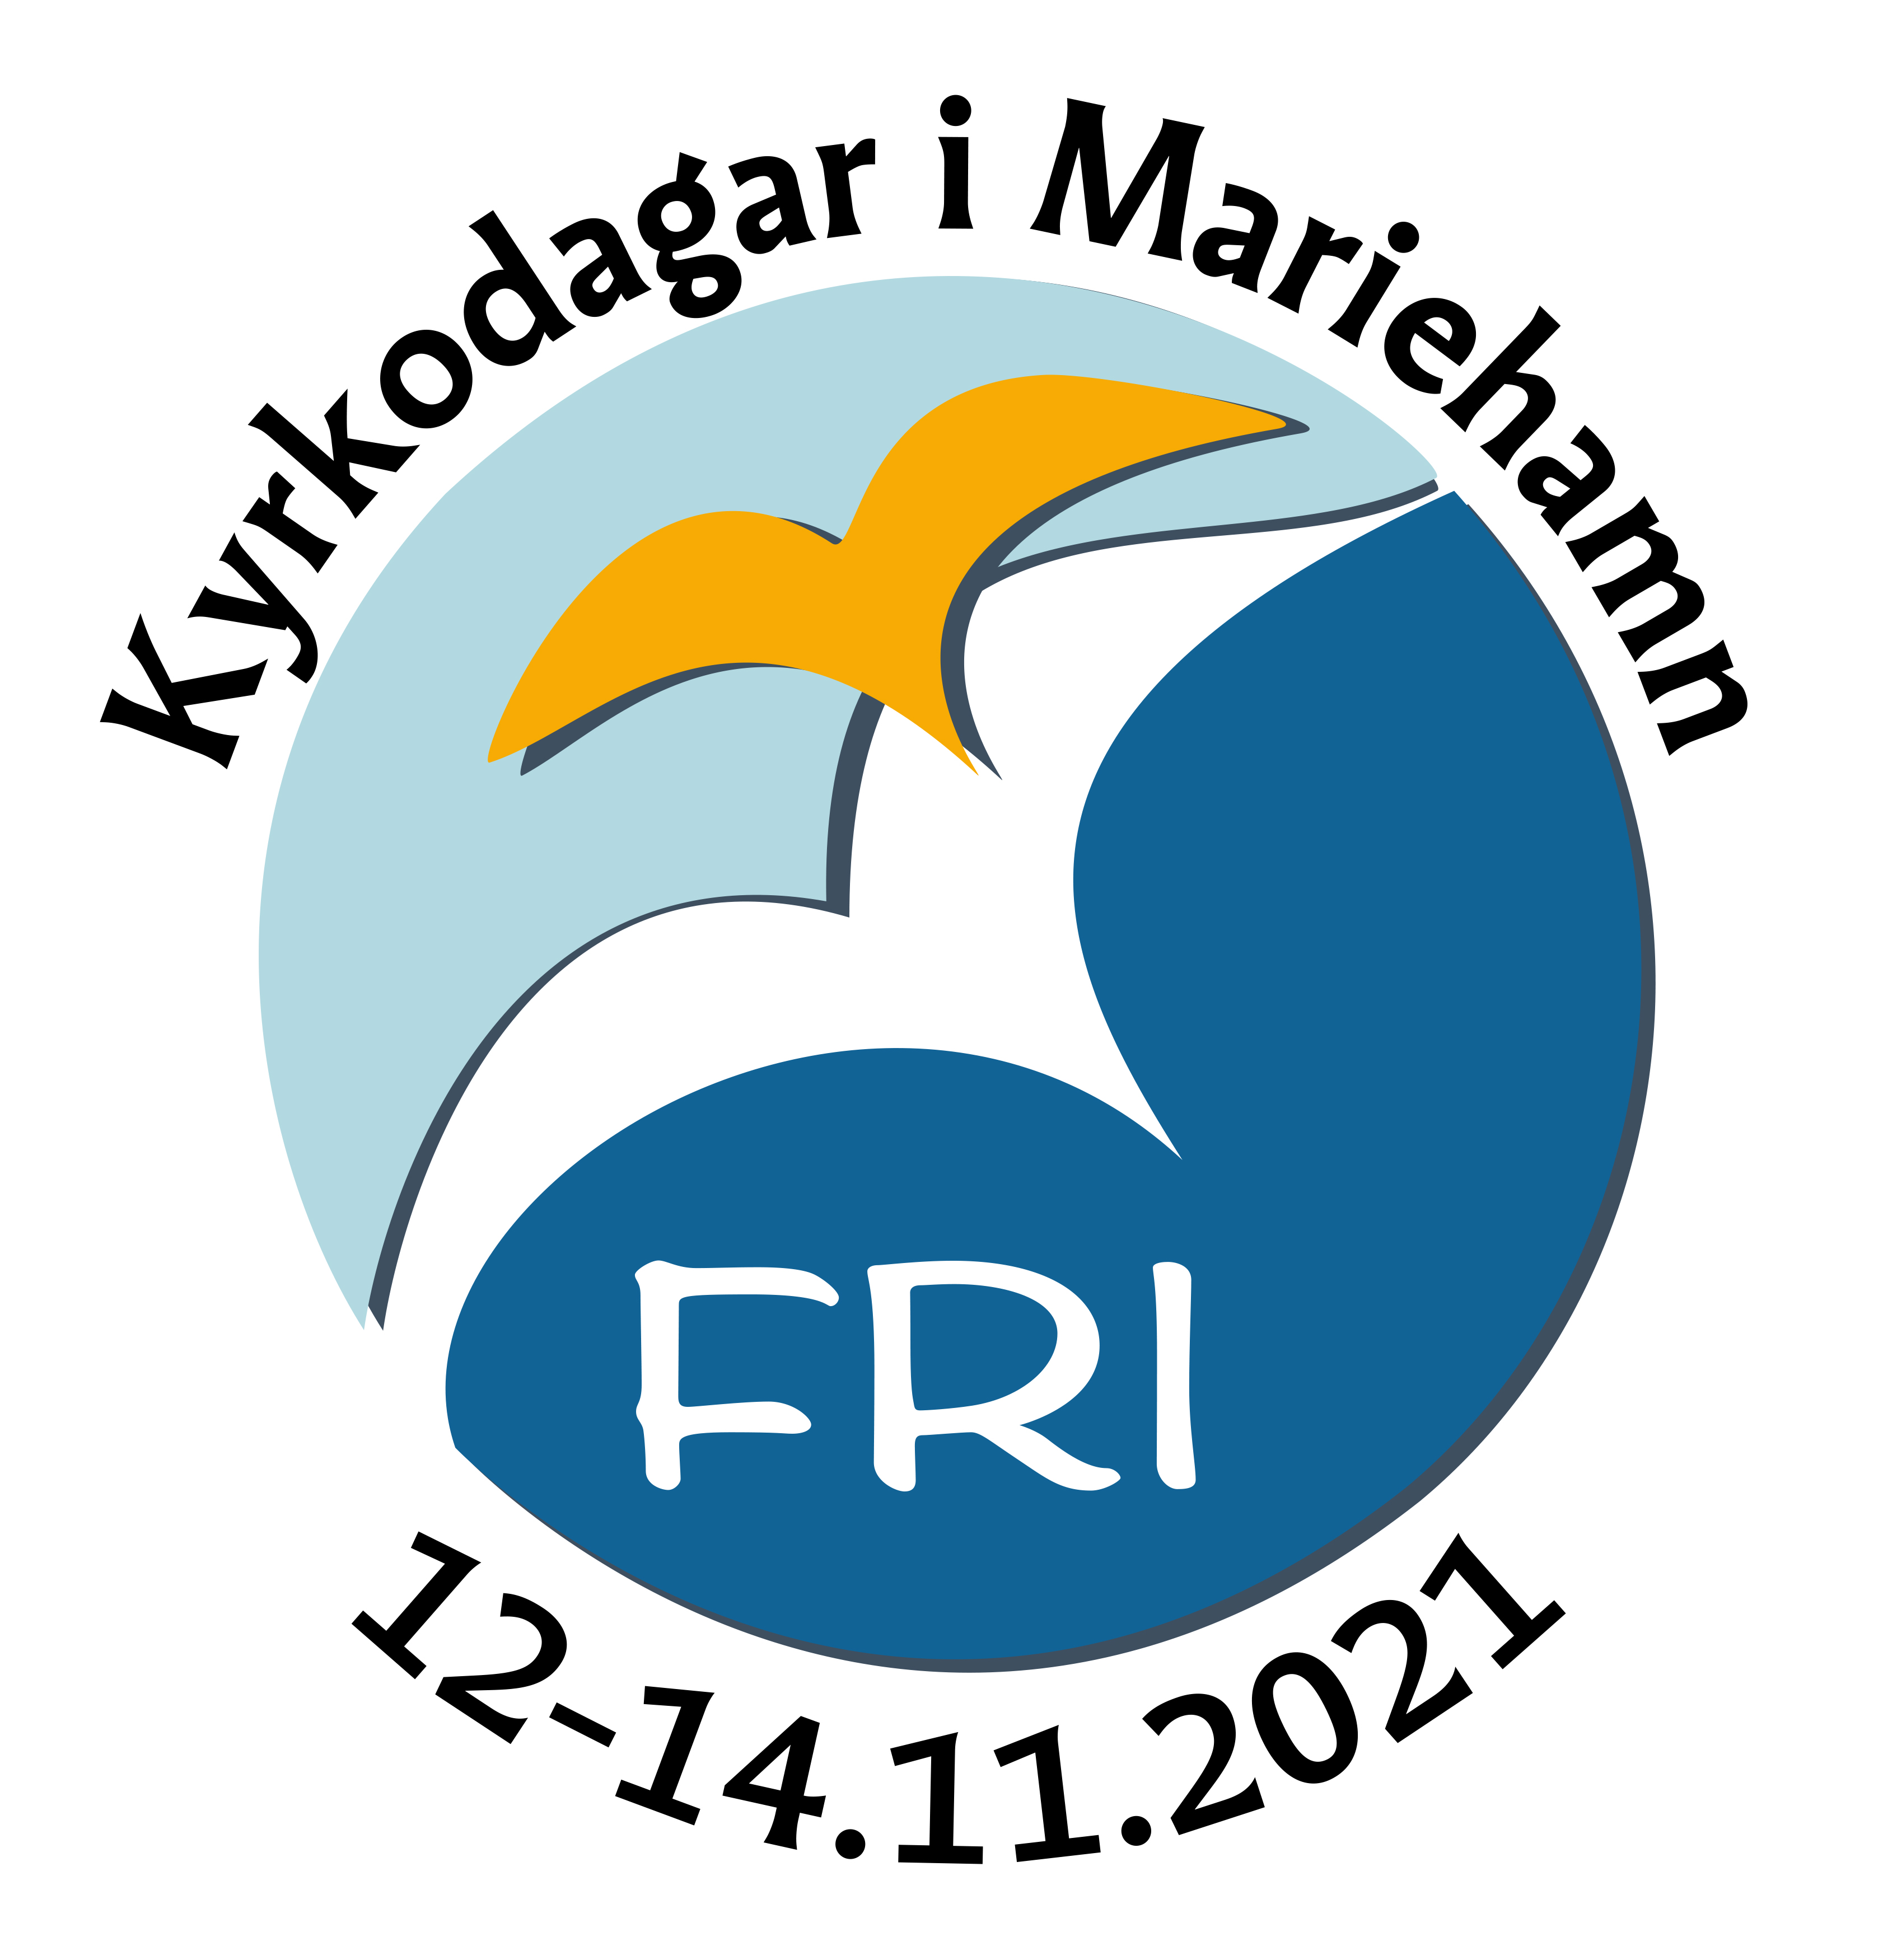 Logo för Kyrkodagarna, medelstor bild med text och datum